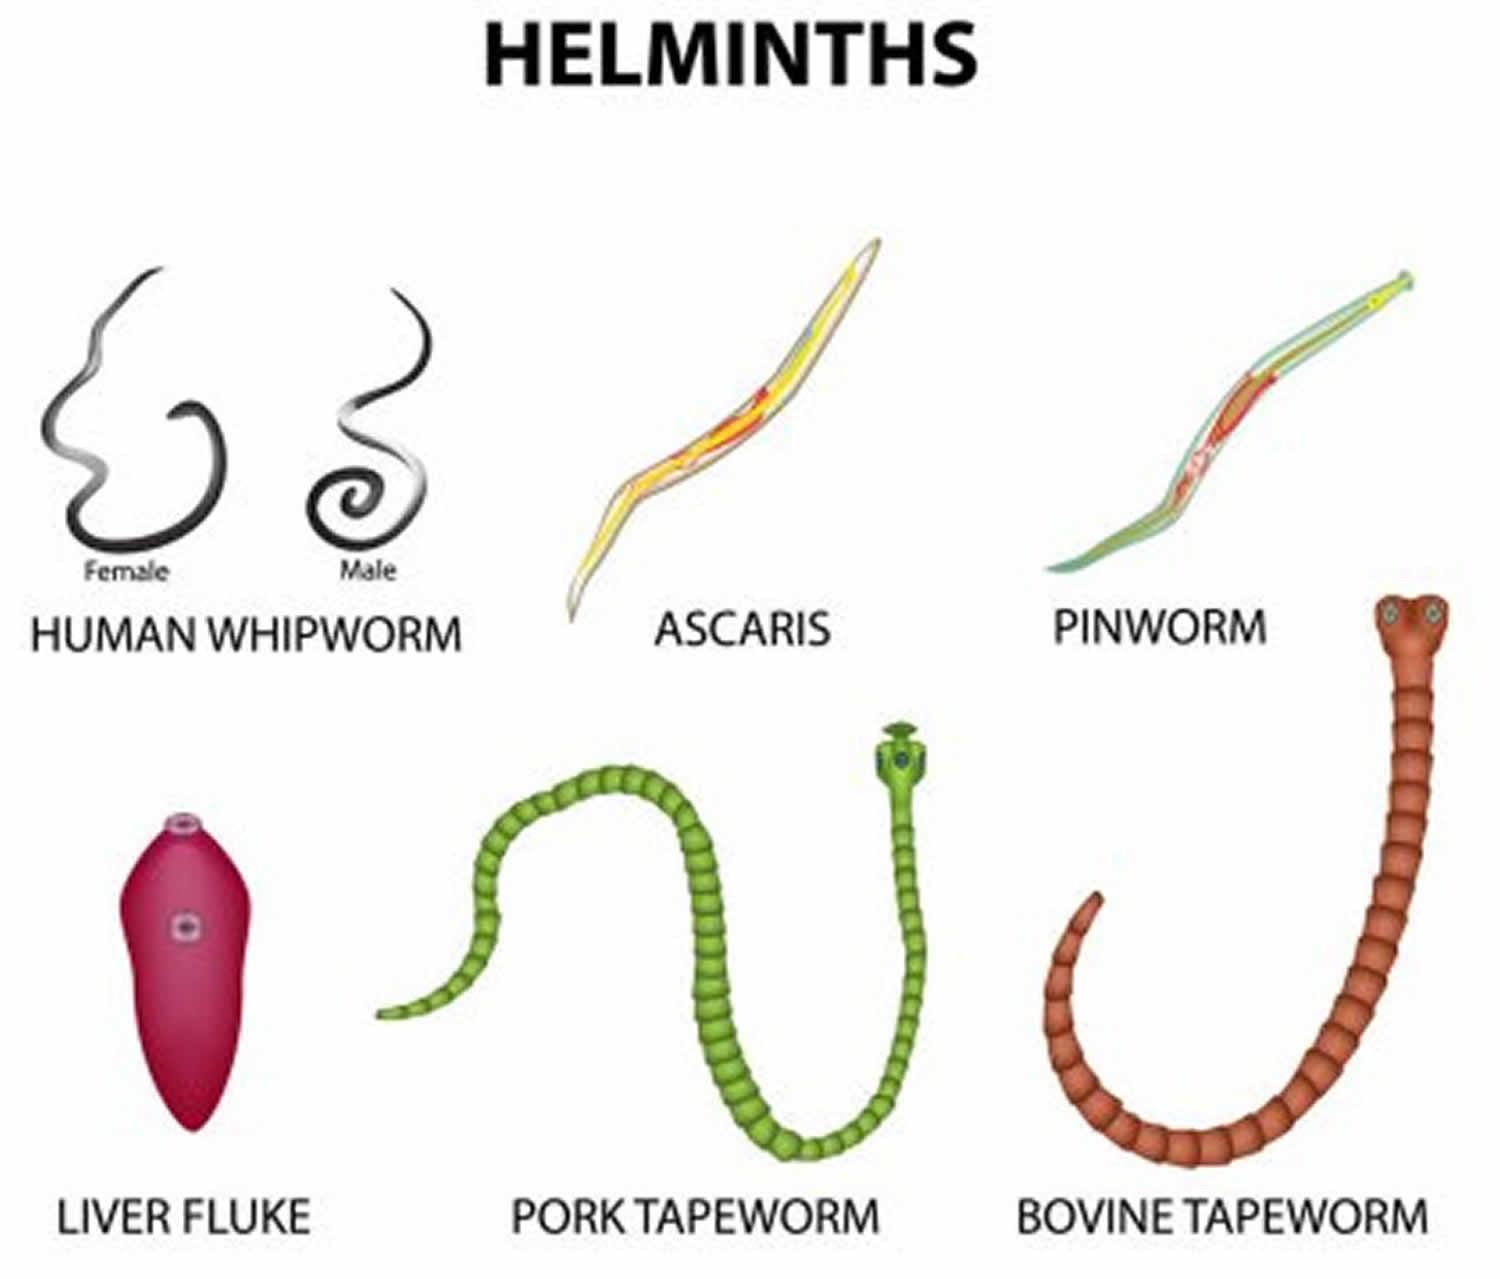 define helminthiasis